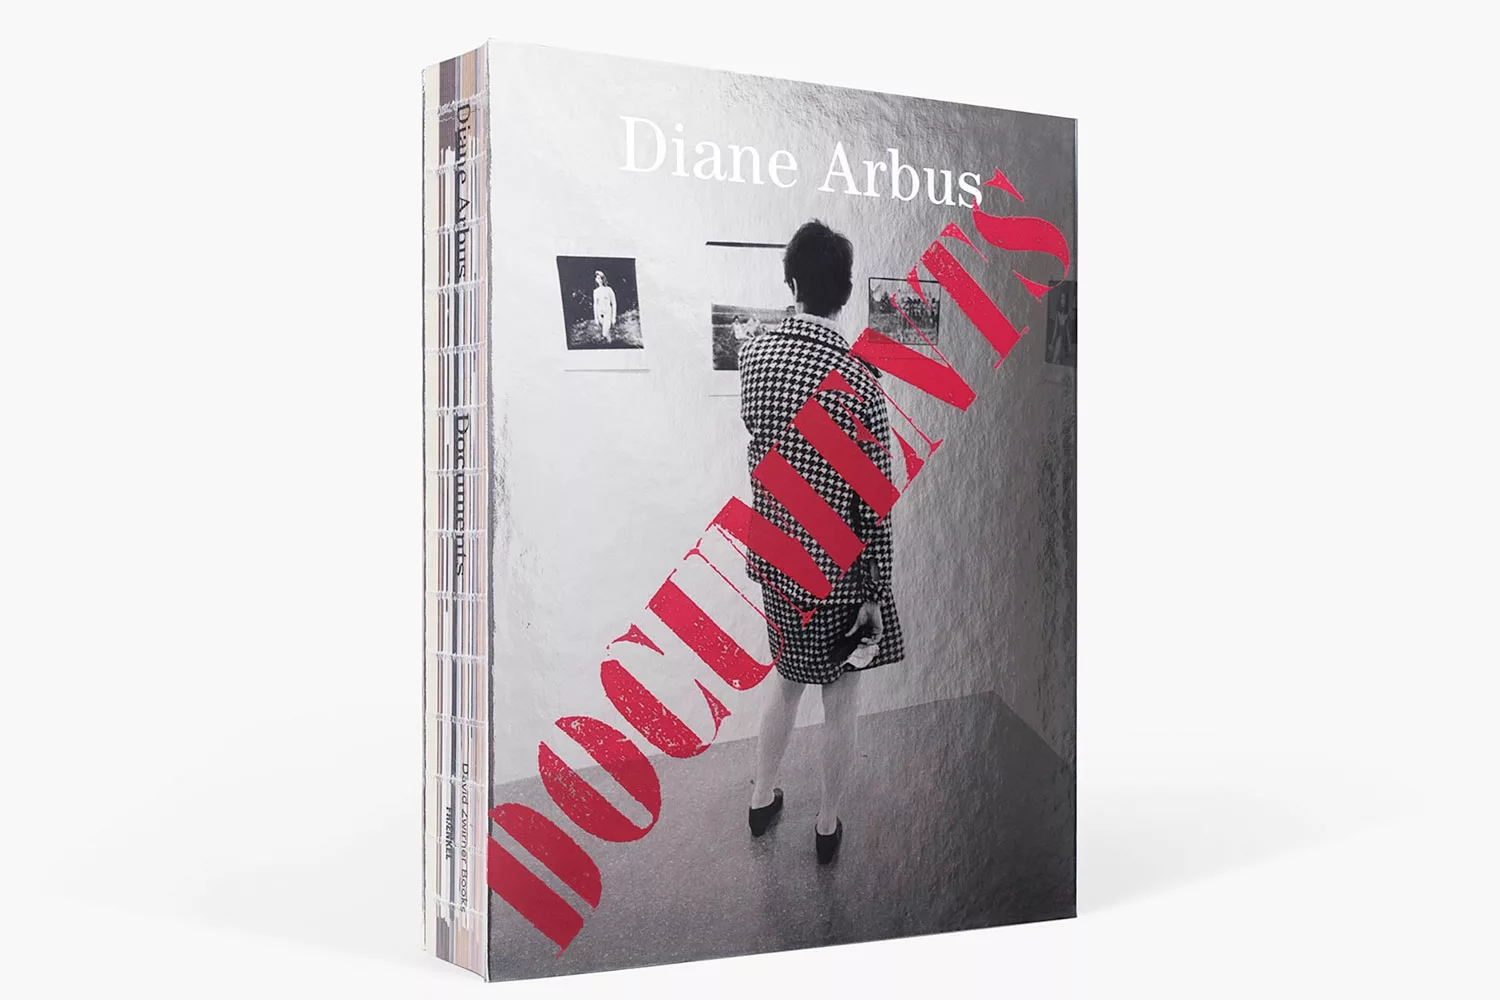 Book cover of Diane Arbus Documents -Diane Arbus Photographs